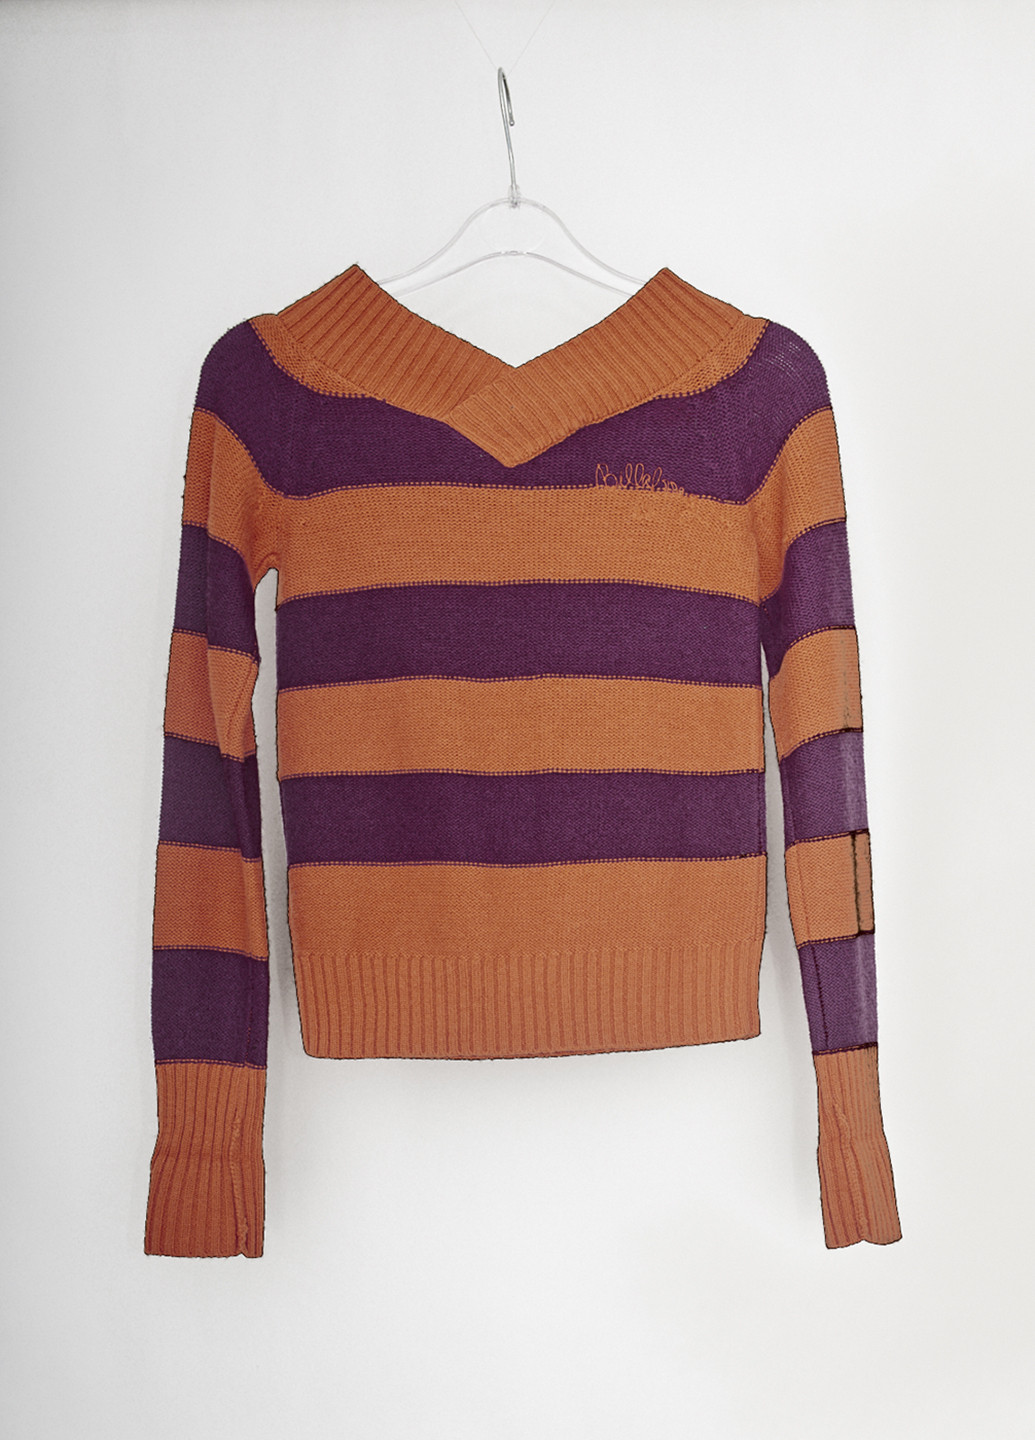 Оранжевый демисезонный пуловер пуловер Billabong